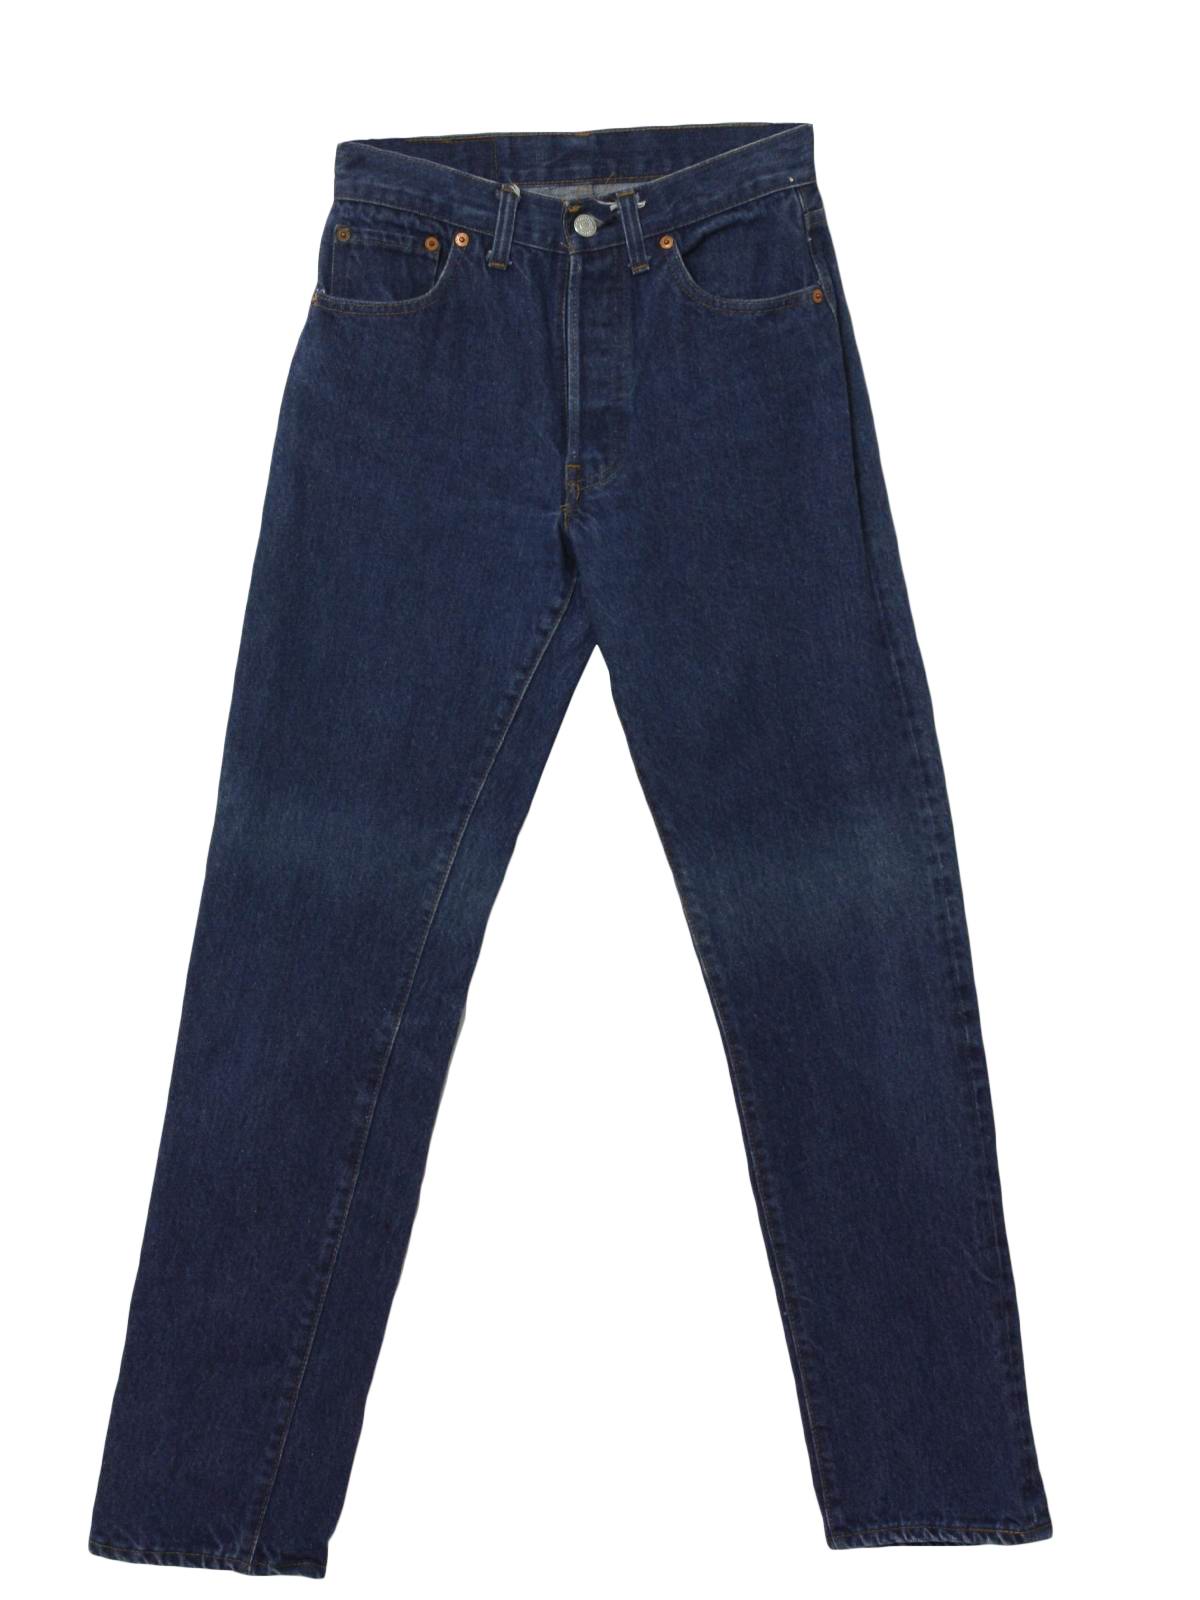 Levis Eighties Vintage Pants: 80s -Levis- Mens faded blue cotton denim ...